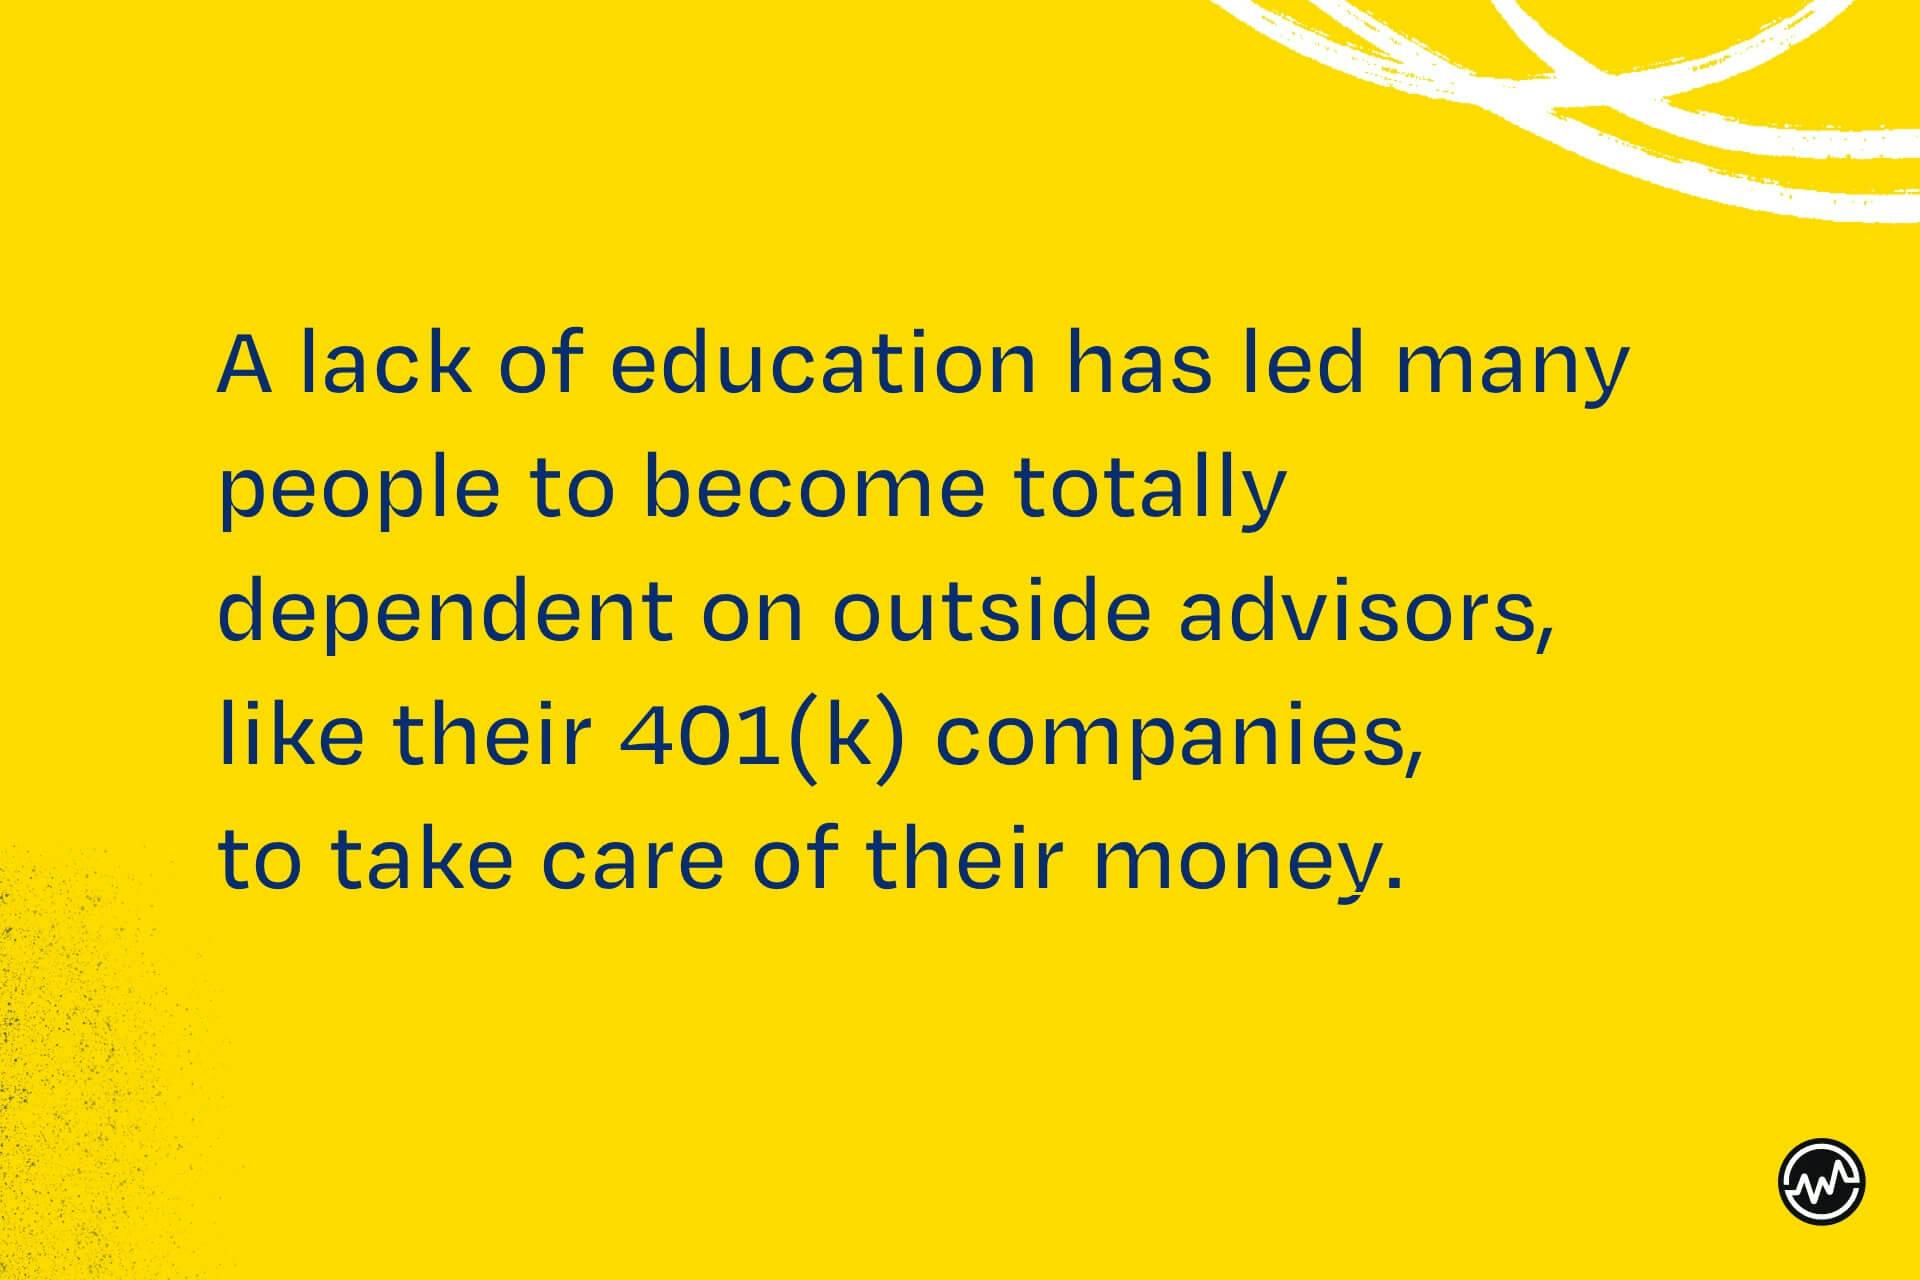  Le manque d'éducation a conduit les gens à devenir dépendants d'investisseurs extérieurs. C'est pourquoi vous devez apprendre à devenir investisseur 